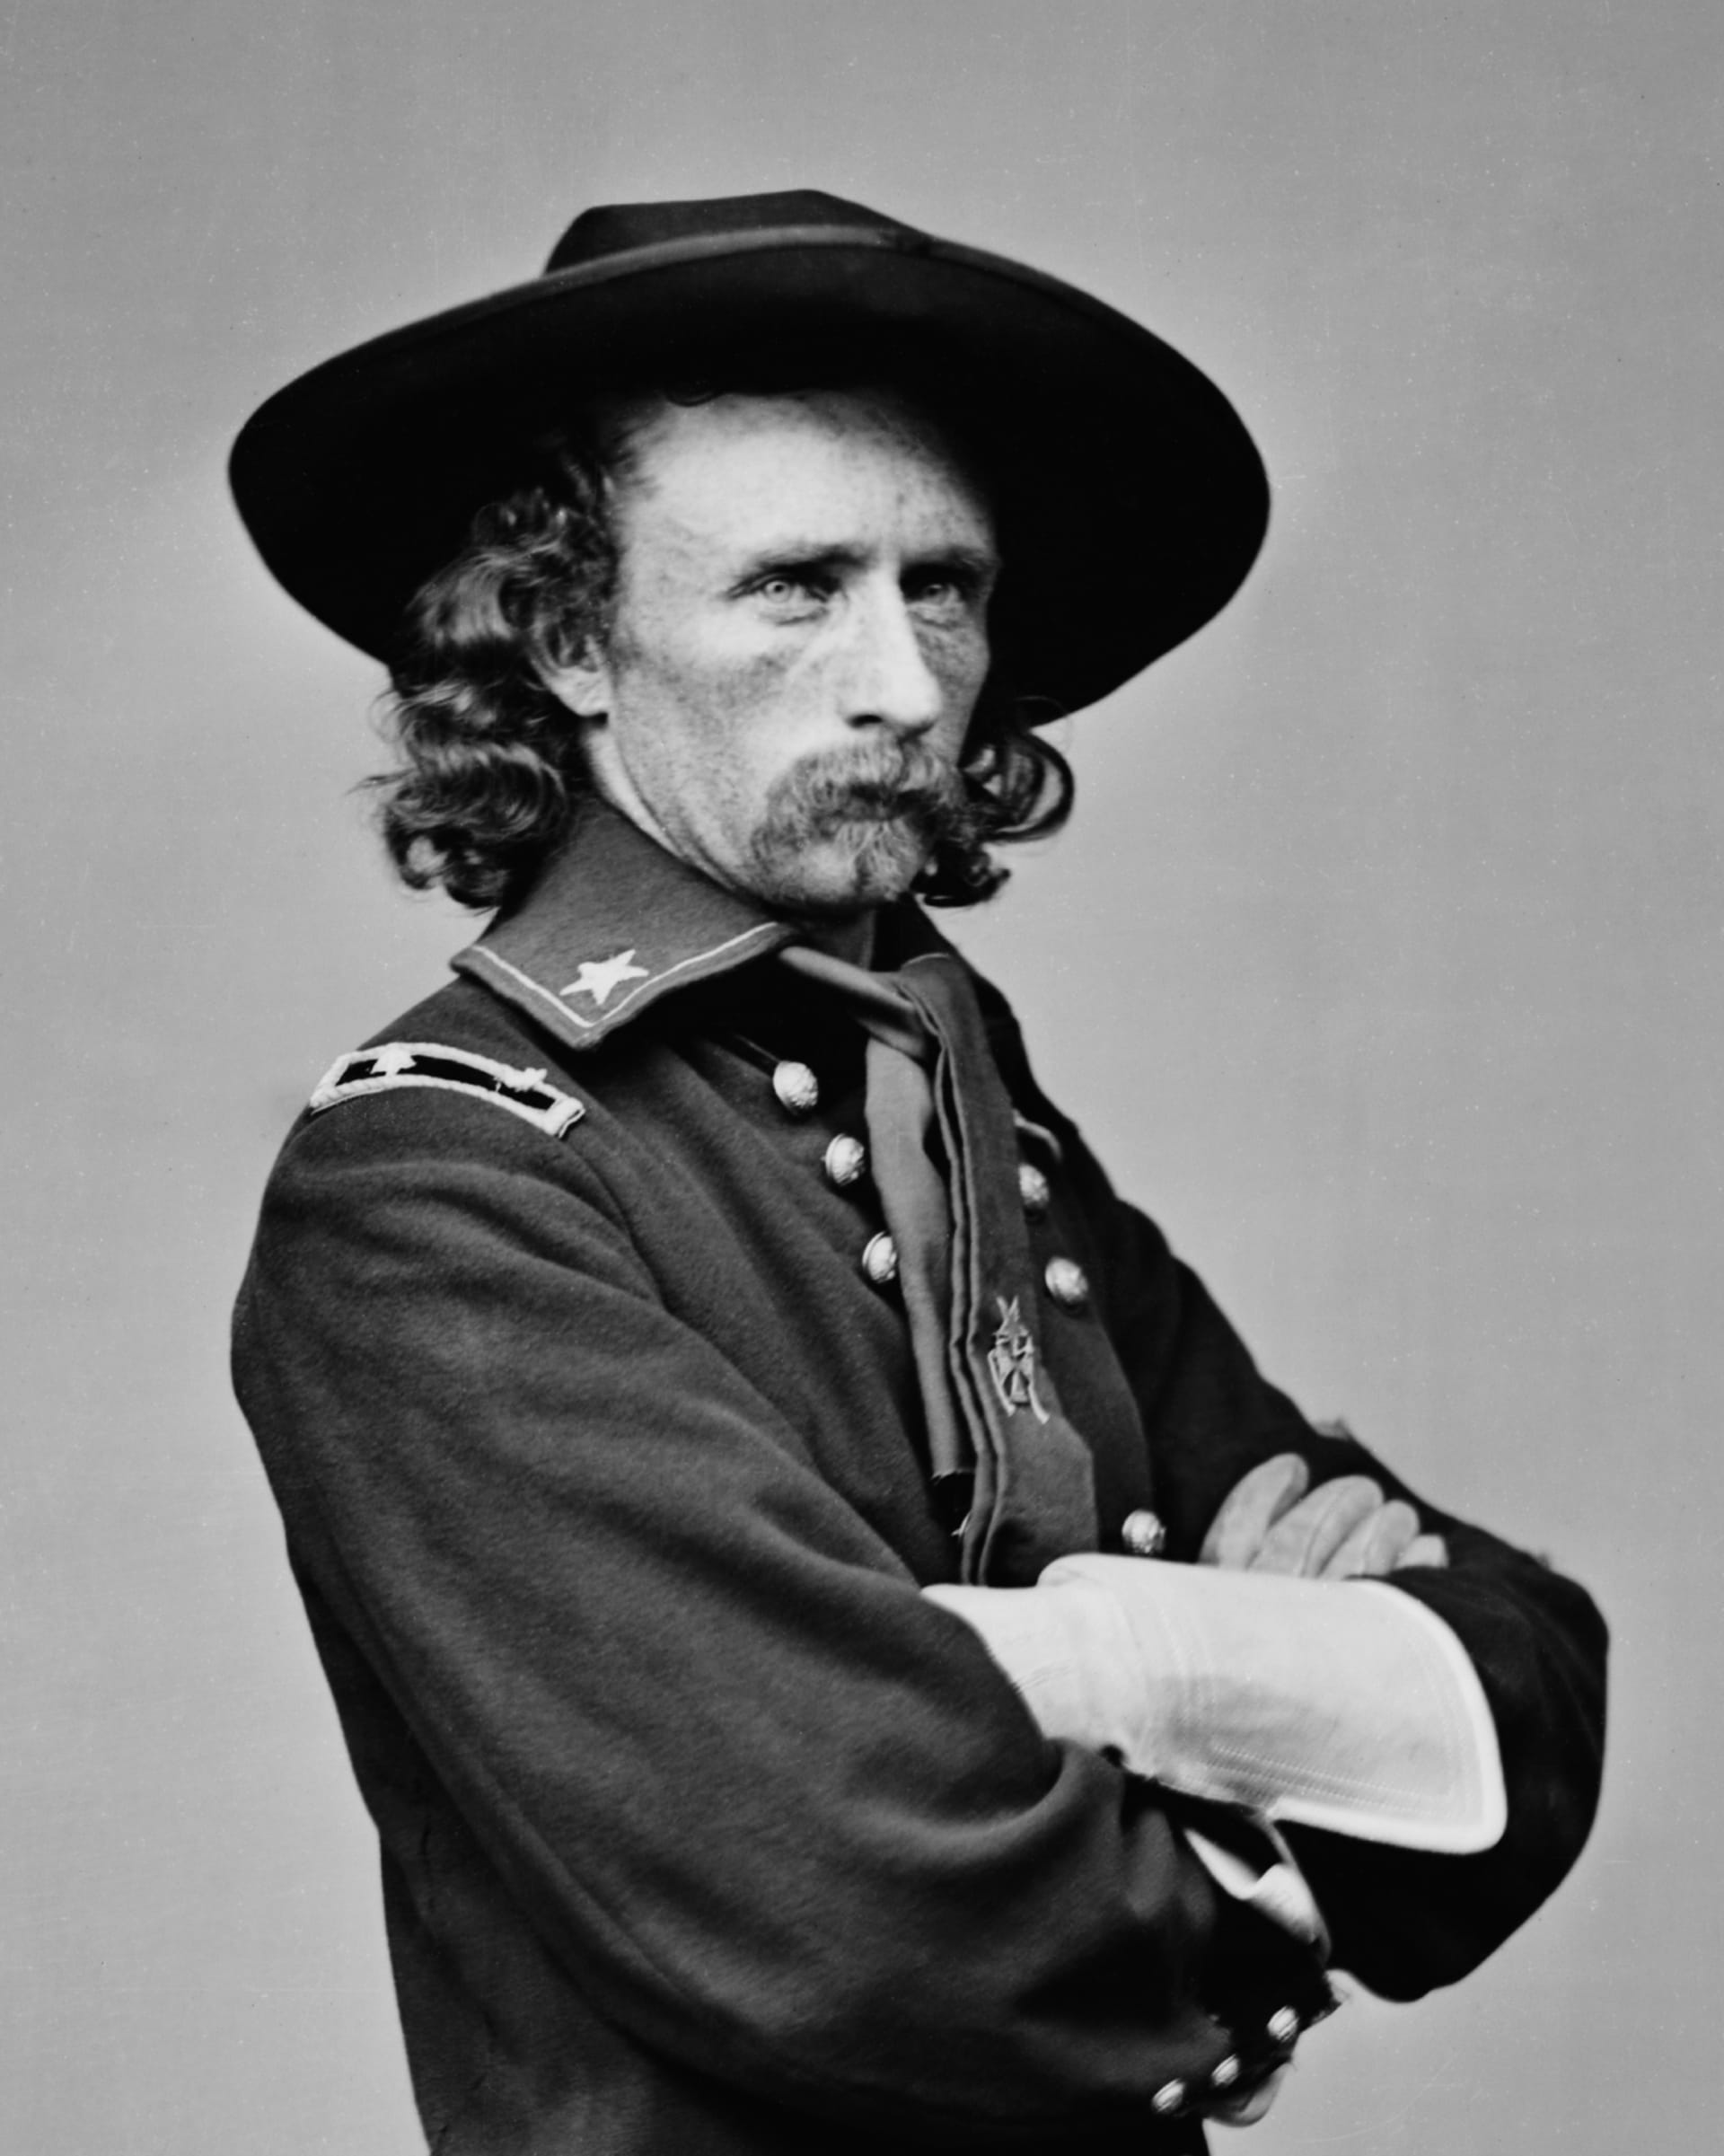 Generál Custer v polní uniformě na snímku z roku 1865